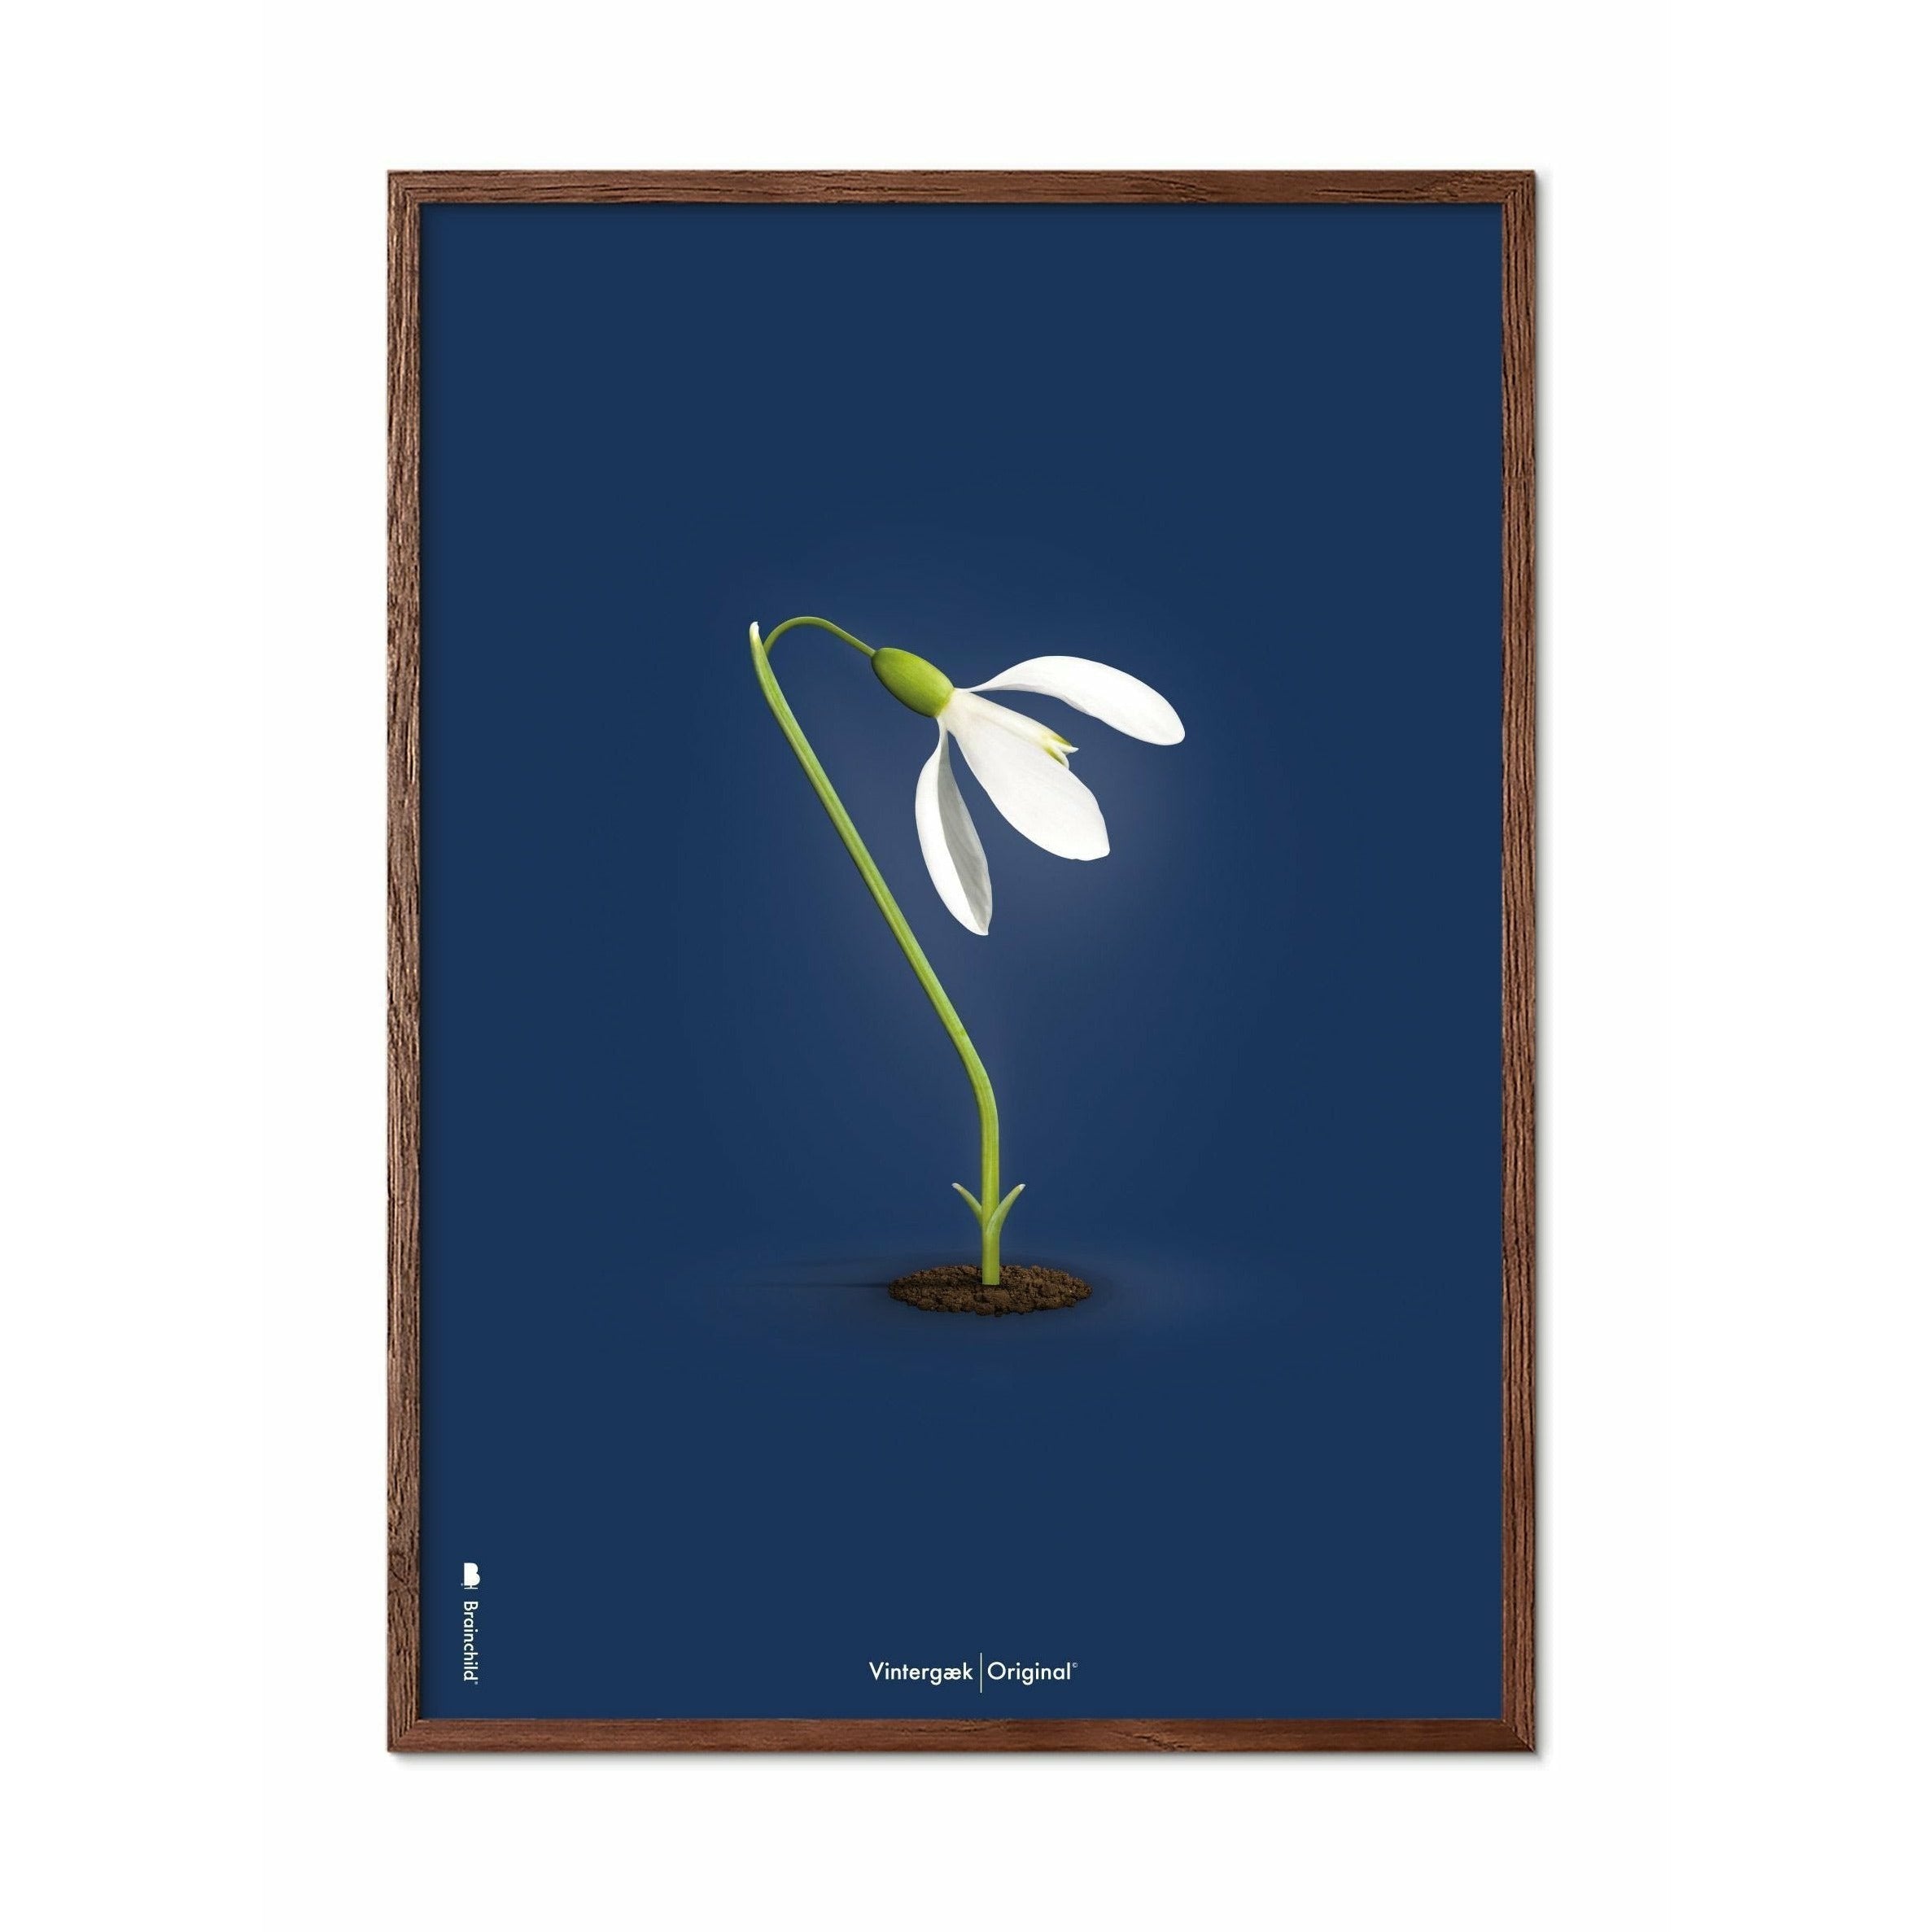 Brainchild Snowdrop Classic Poster, Frame Made of Dark Wood 50x70 cm, mørkeblå bakgrunn